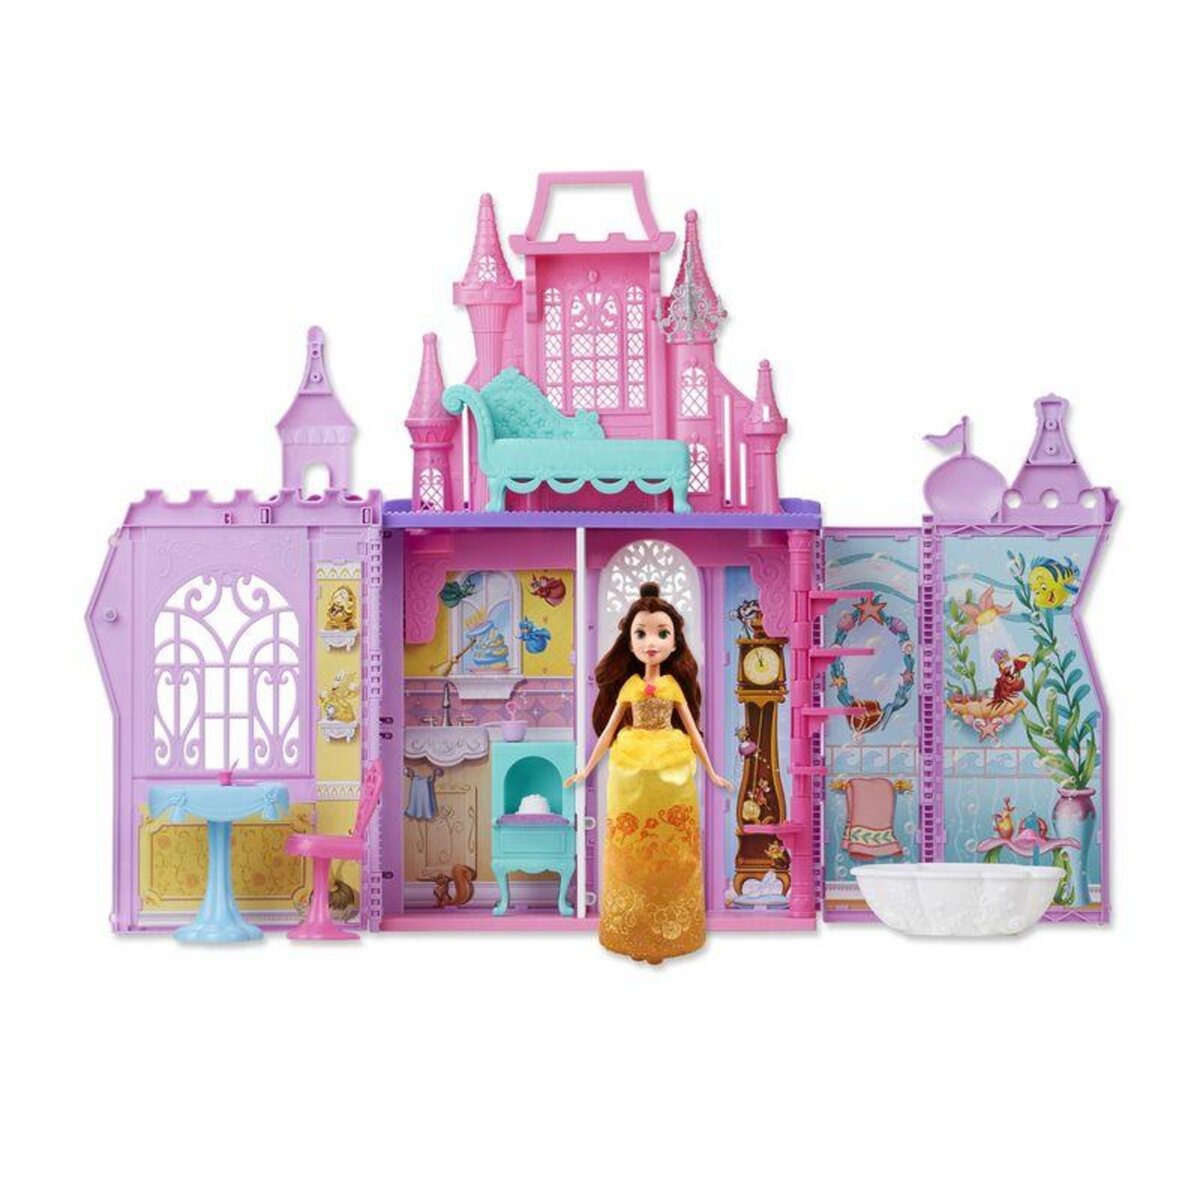 HASBRO Château mallette + poupée Belle - Disney Princess